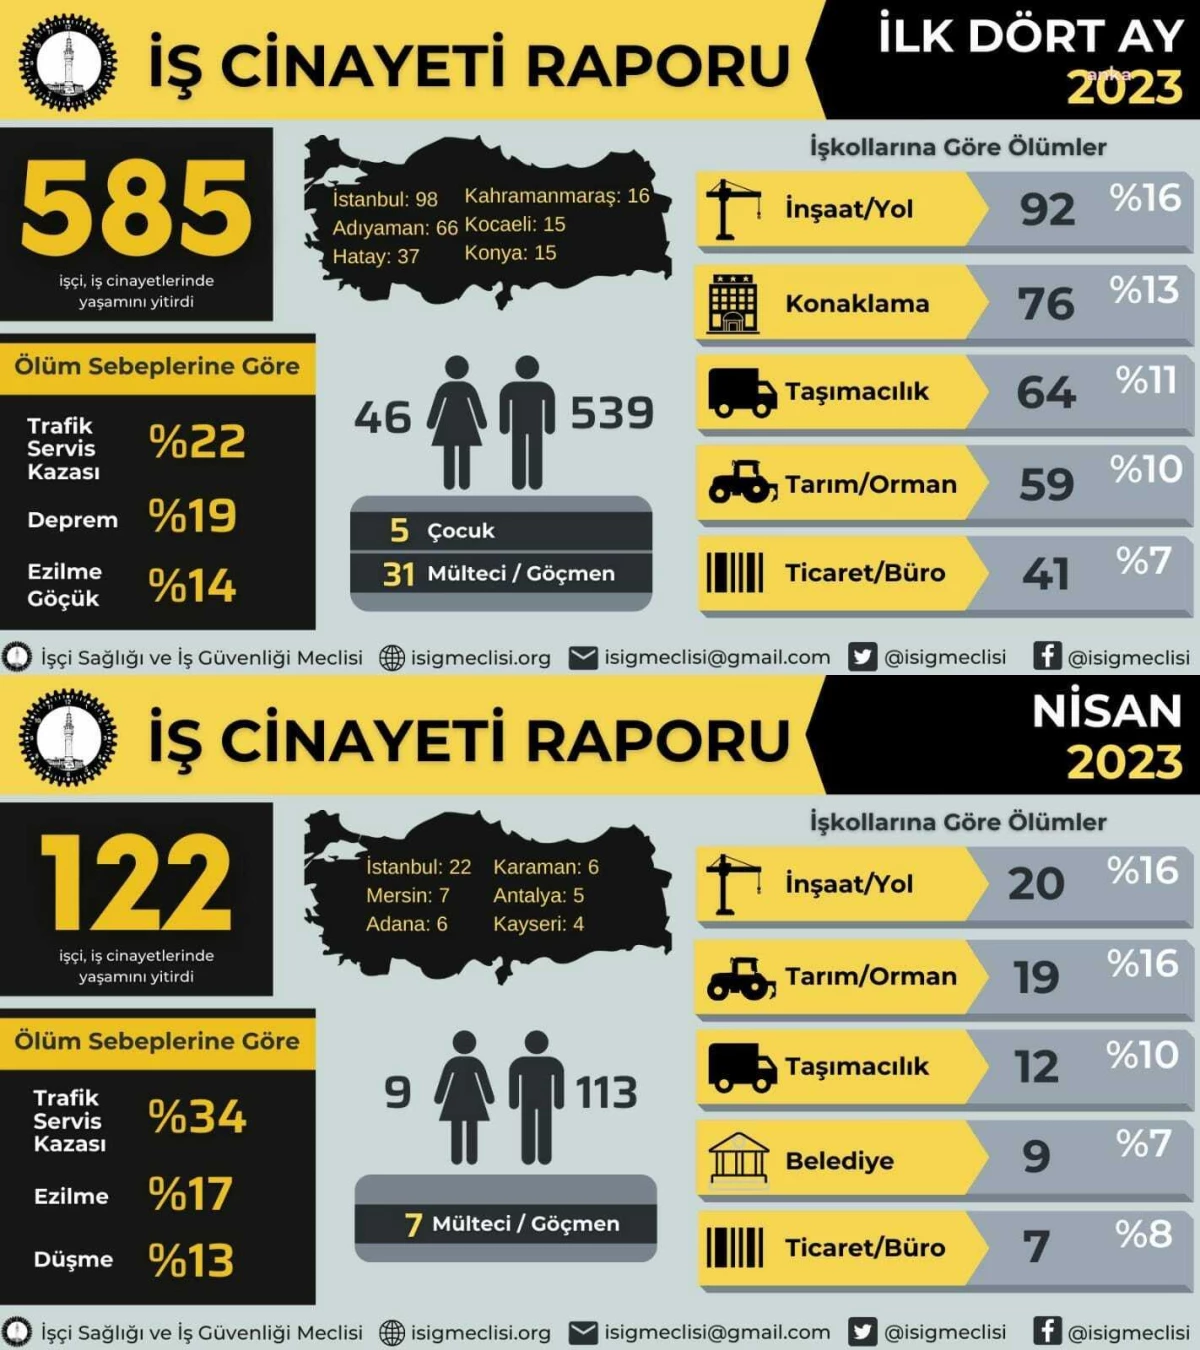 İsig: 2023 Yılının Birinci Dört Ayında 585, AKP'nin İktidarda Olduğu Yıllarda 31 Bin 131 İşçi İş Cinayetlerinde Ömrünü Yitirdi